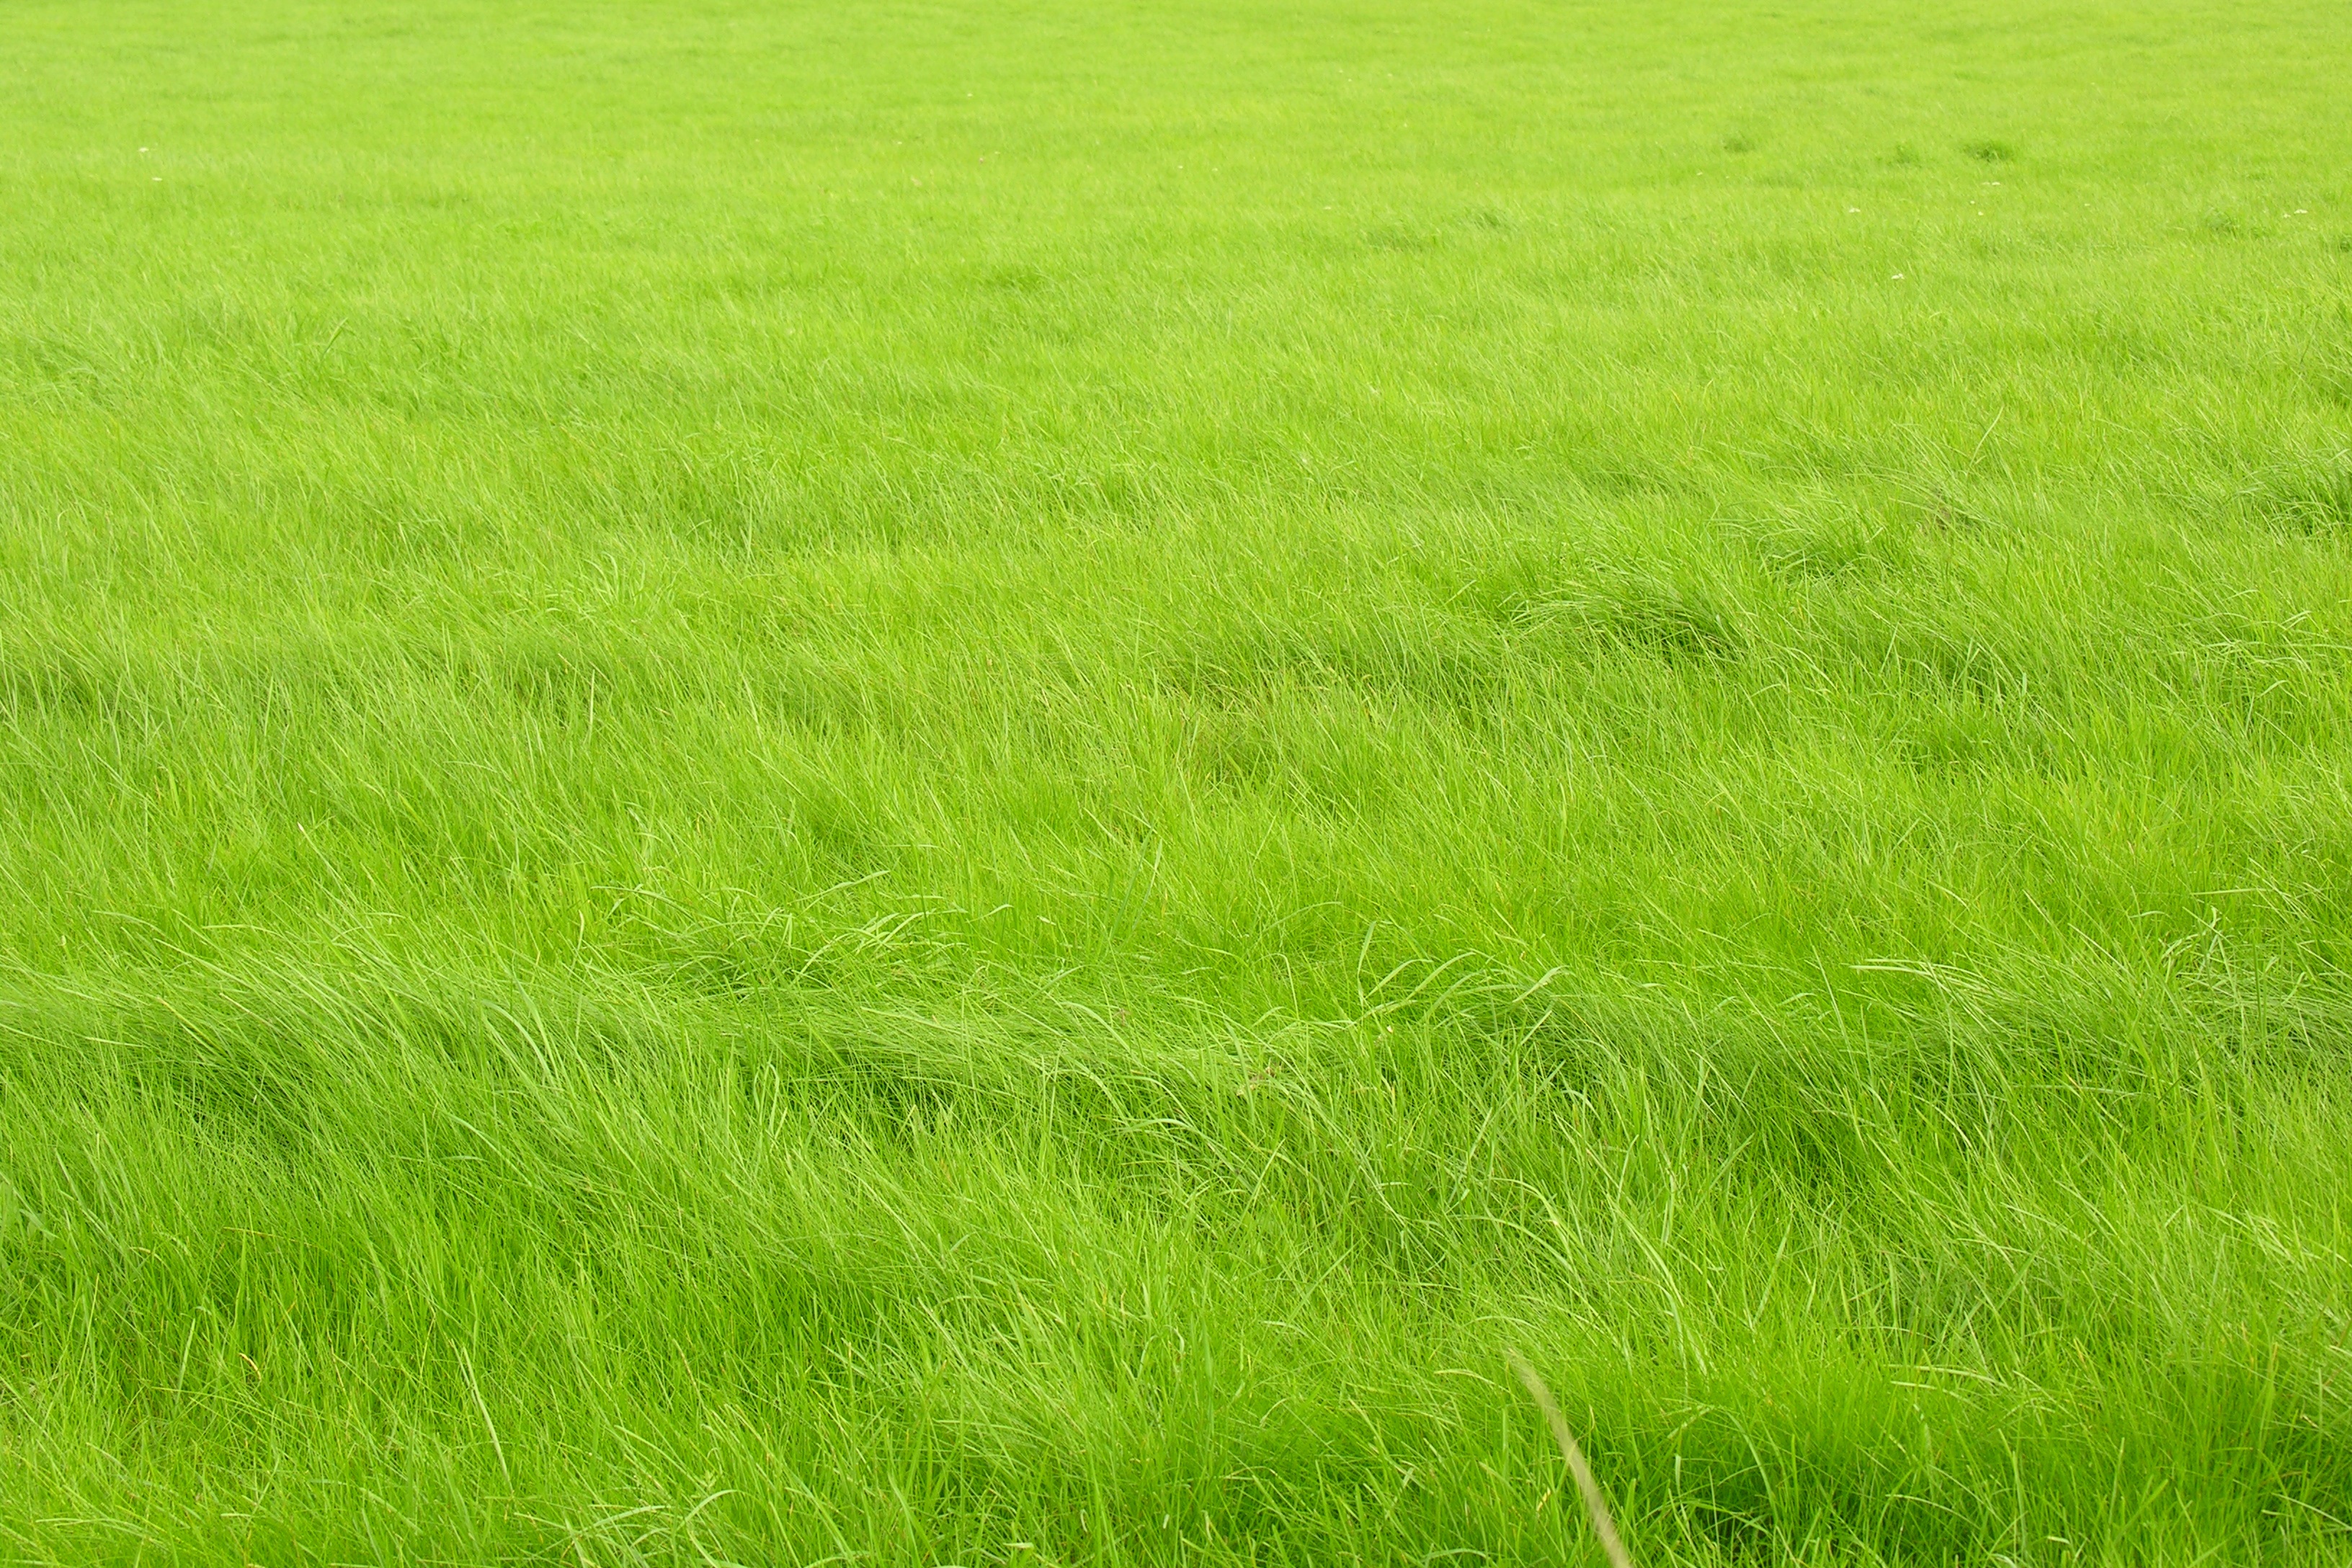 An unusually beautiful green lawn